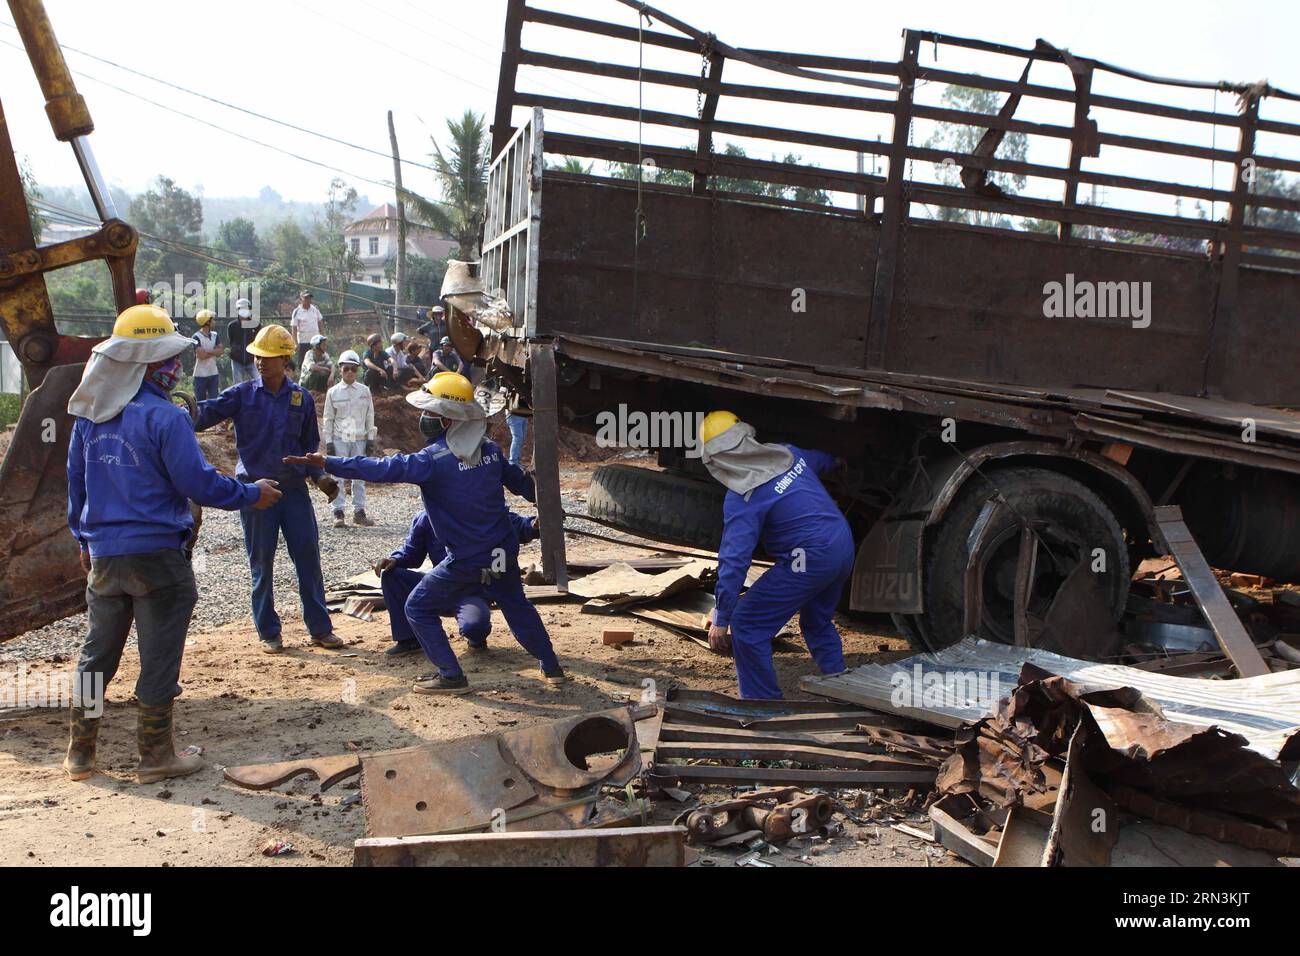 (150421) -- HANOI, 21 aprile 2015 -- foto scattata il 21 aprile 2015 mostra una scena di un incidente stradale tra due camion nella provincia del DAC Lac, Vietnam. L'incidente è avvenuto tra due camion carichi di mattoni e rottami metallici che viaggiano in direzioni opposte martedì mattina presto nel DAC Lac, uccidendo sei persone e ferendone una. ) VIETNAM-DAC LAC-ROAD INCIDENTE VNA PUBLICATIONxNOTxINxCHN Hanoi 21 aprile 2015 la foto scattata IL 21 aprile 2015 mostra una scena di un incidente stradale tra due camion nella provincia di DAC Lac Vietnam l'incidente è avvenuto tra due camion CARICHI DI mattoni e rottami di metalli TR Foto Stock